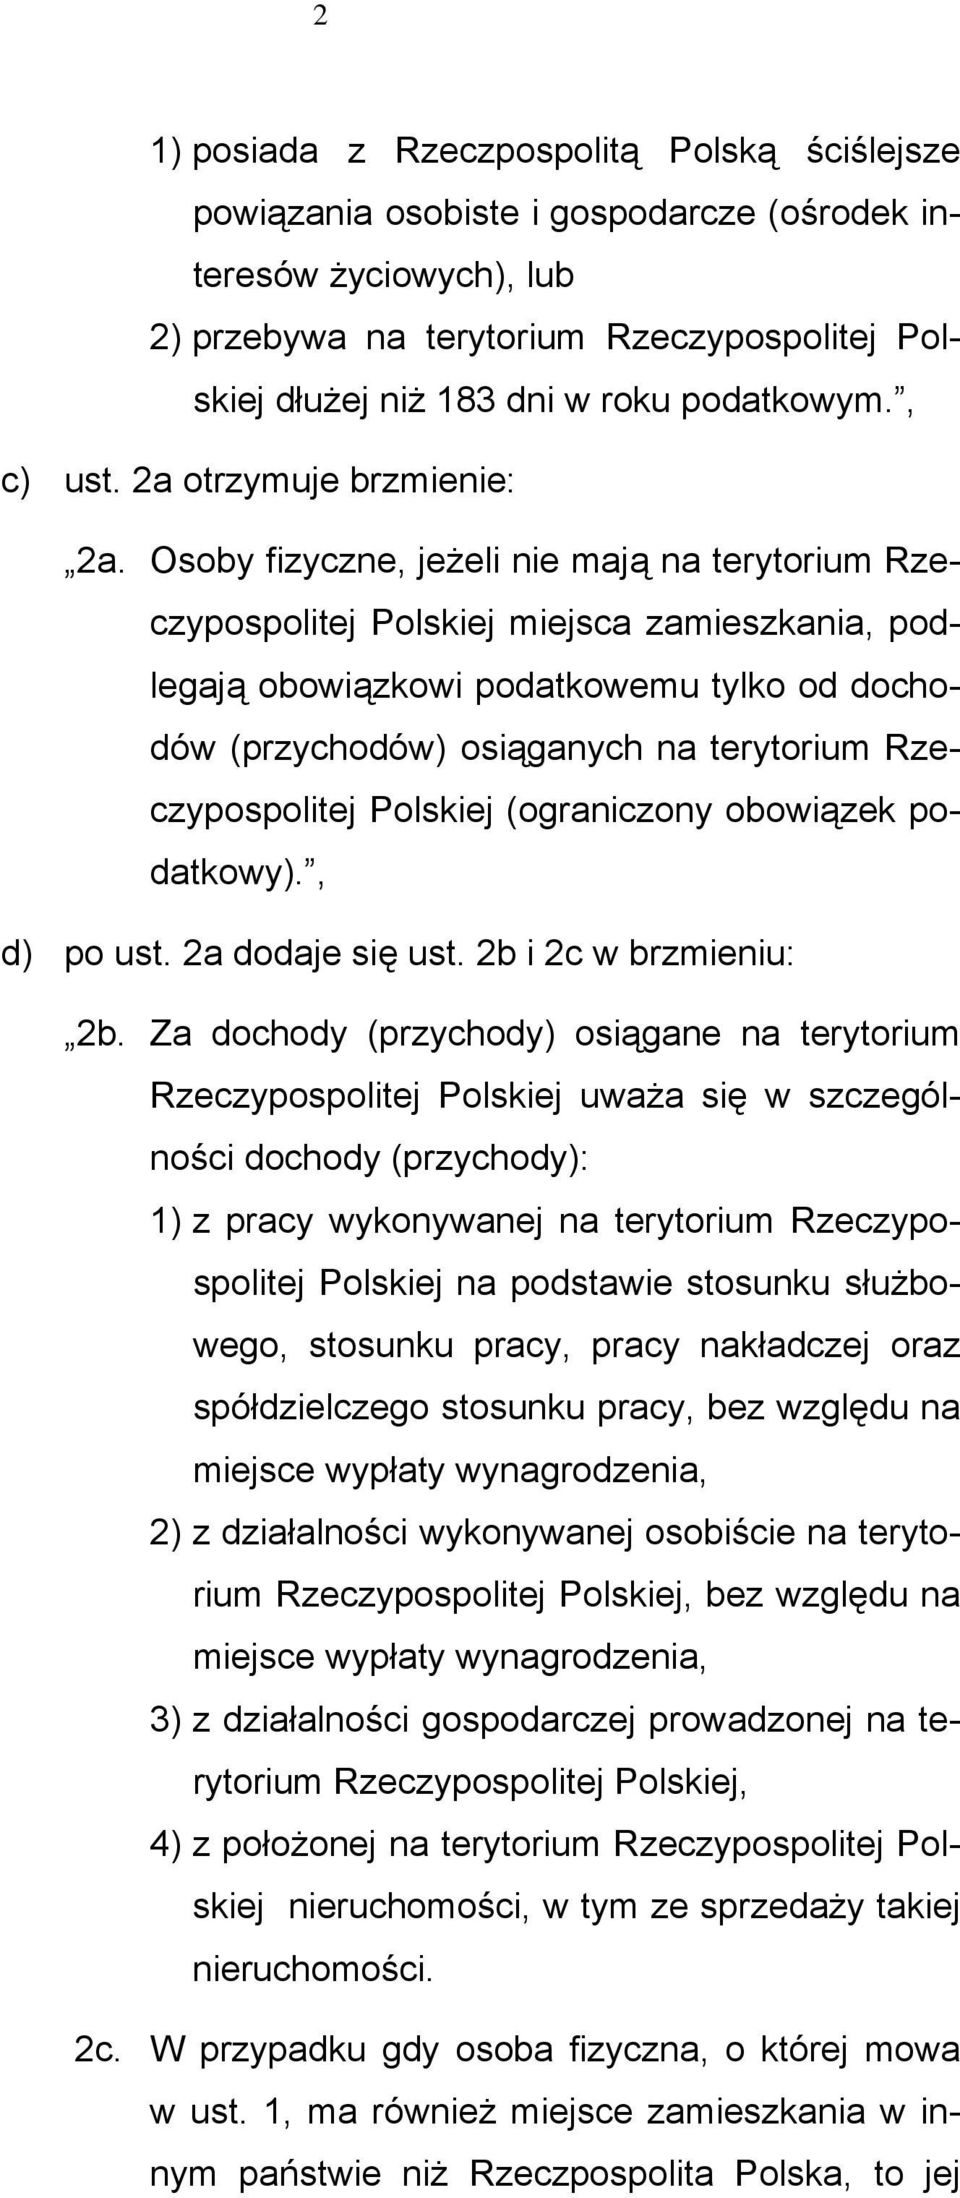 Osoby fizyczne, jeżeli nie mają na terytorium Rzeczypospolitej Polskiej miejsca zamieszkania, podlegają obowiązkowi podatkowemu tylko od dochodów (przychodów) osiąganych na terytorium